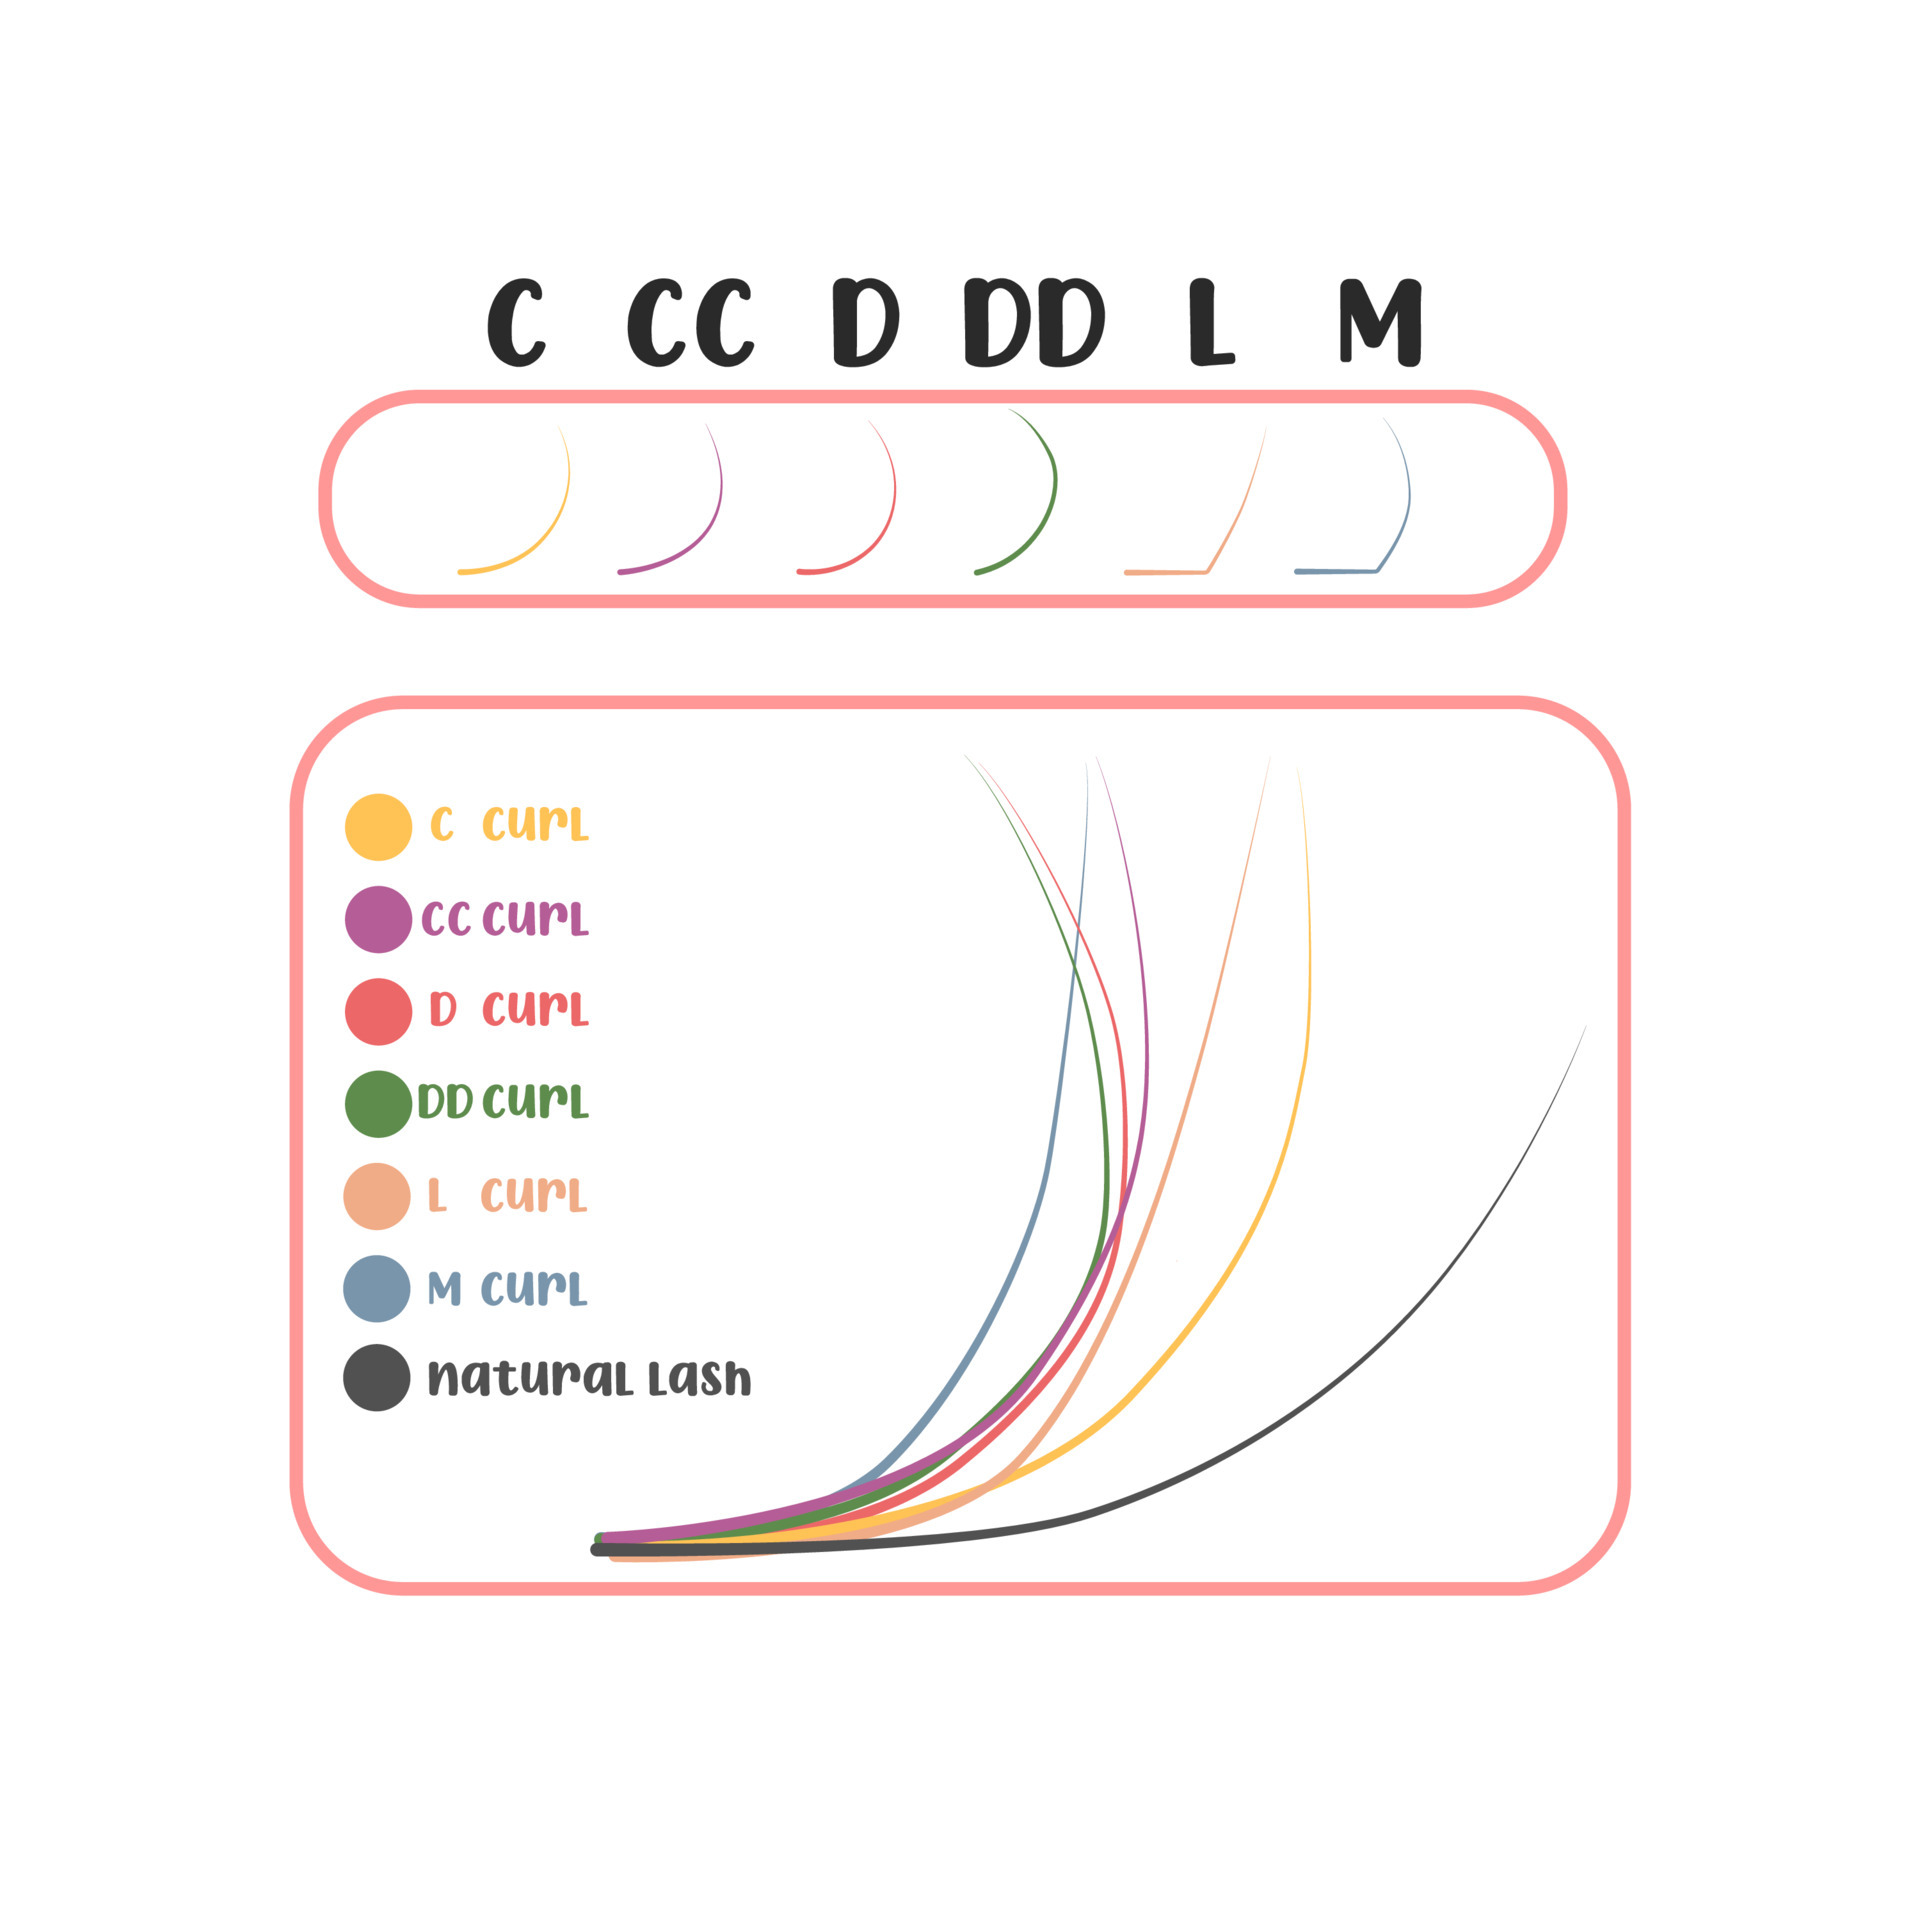 extensão de cílios. opções de curvatura de cílios postiços. tipos de  curvatura de cílios b, c, d, dd, cc, l, m 7079472 Vetor no Vecteezy